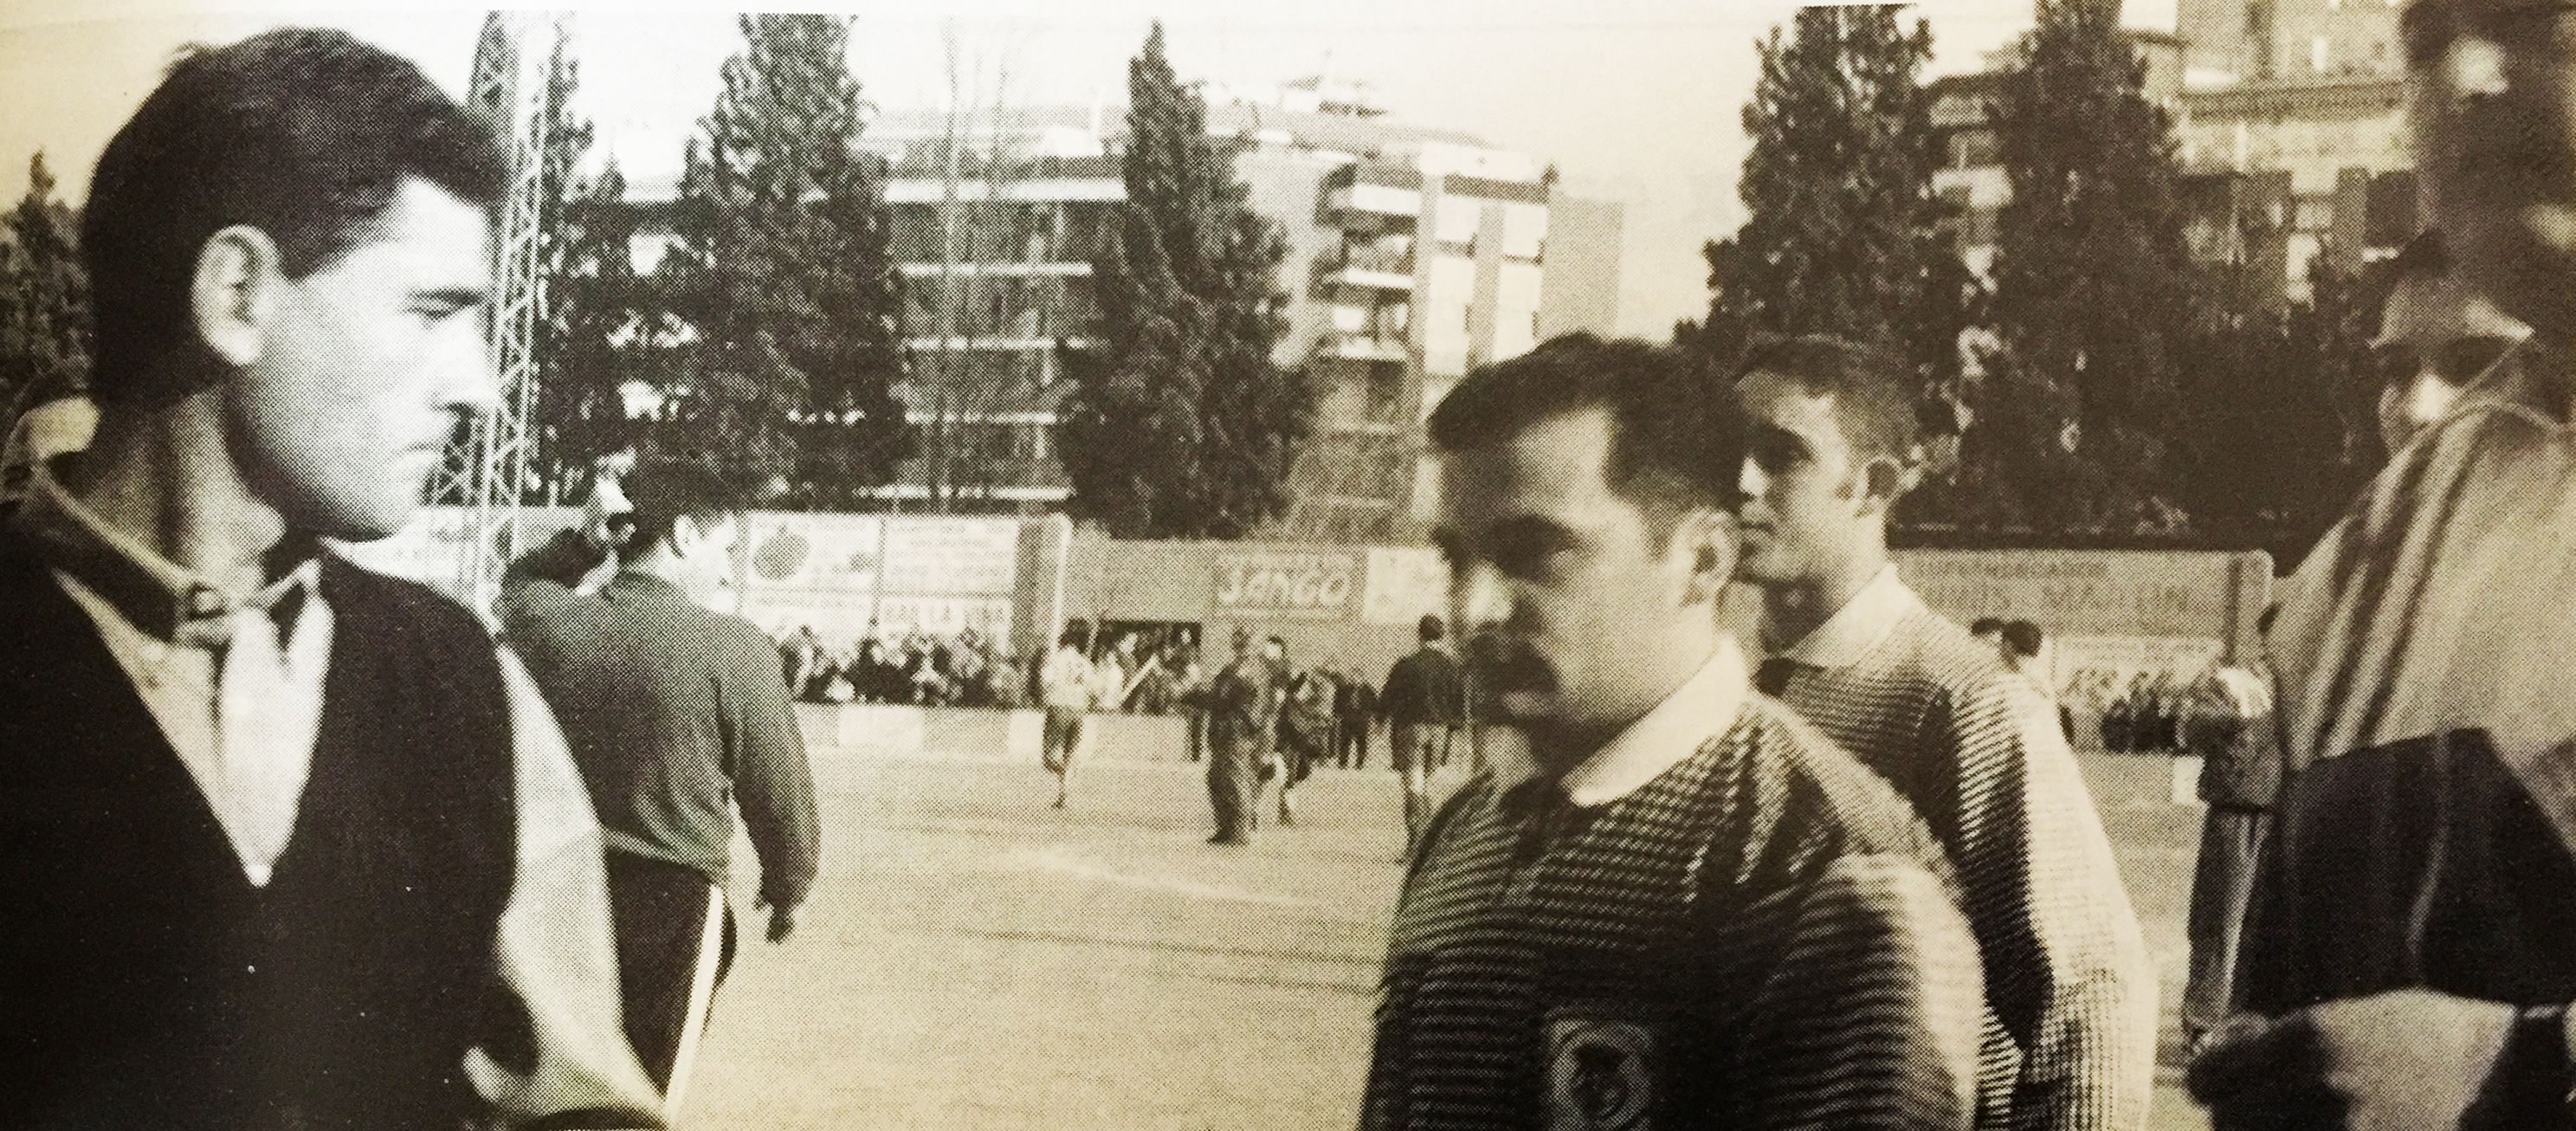 Antic camp de futbol del Carrer Santa Anna TOT Cerdanyola, 543 (Gener 1998)